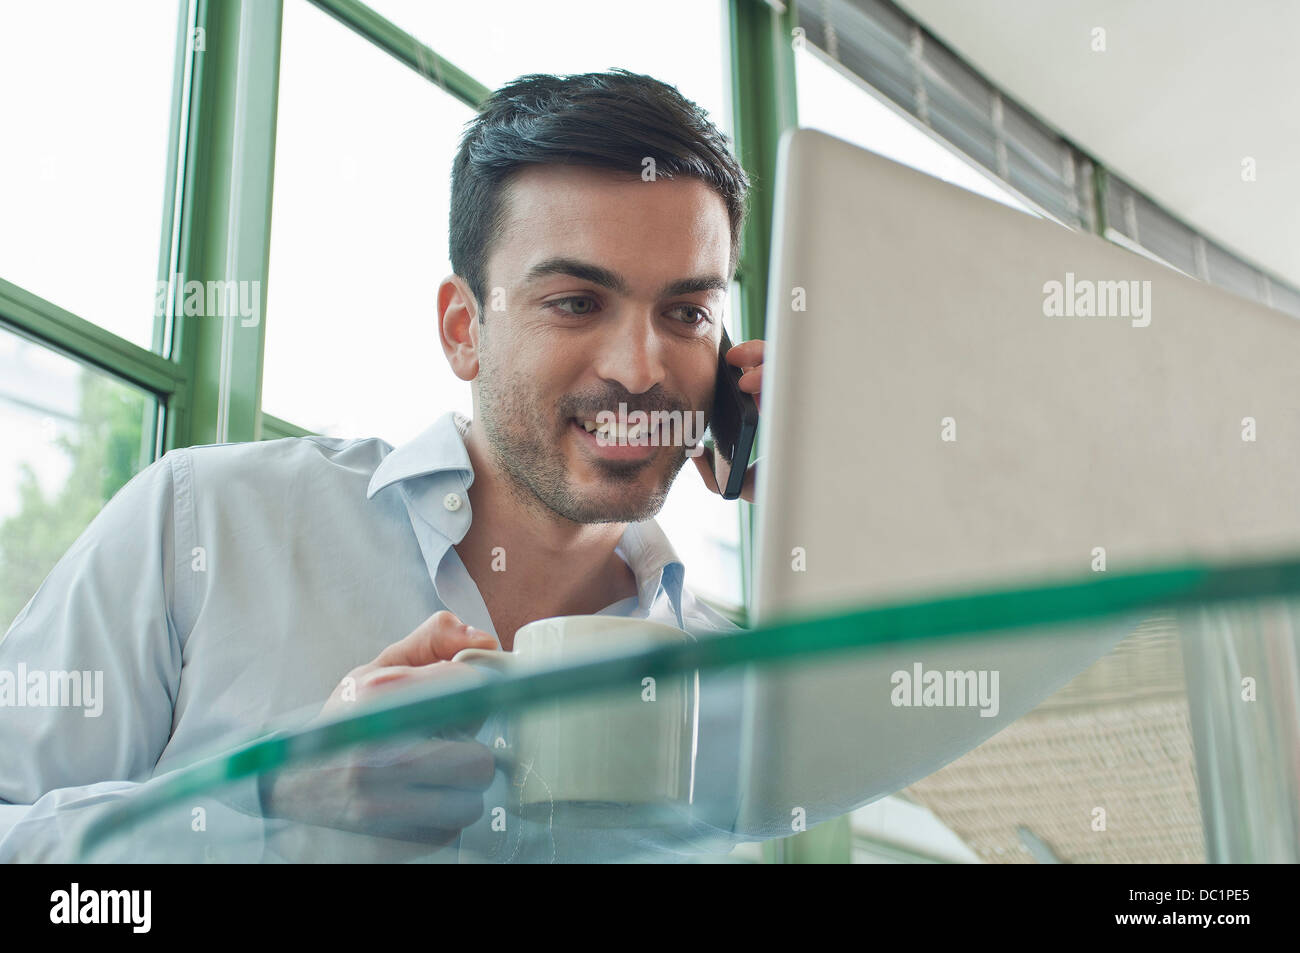 Junge männliche Büroangestellte telefonieren mit Handy Stockfoto